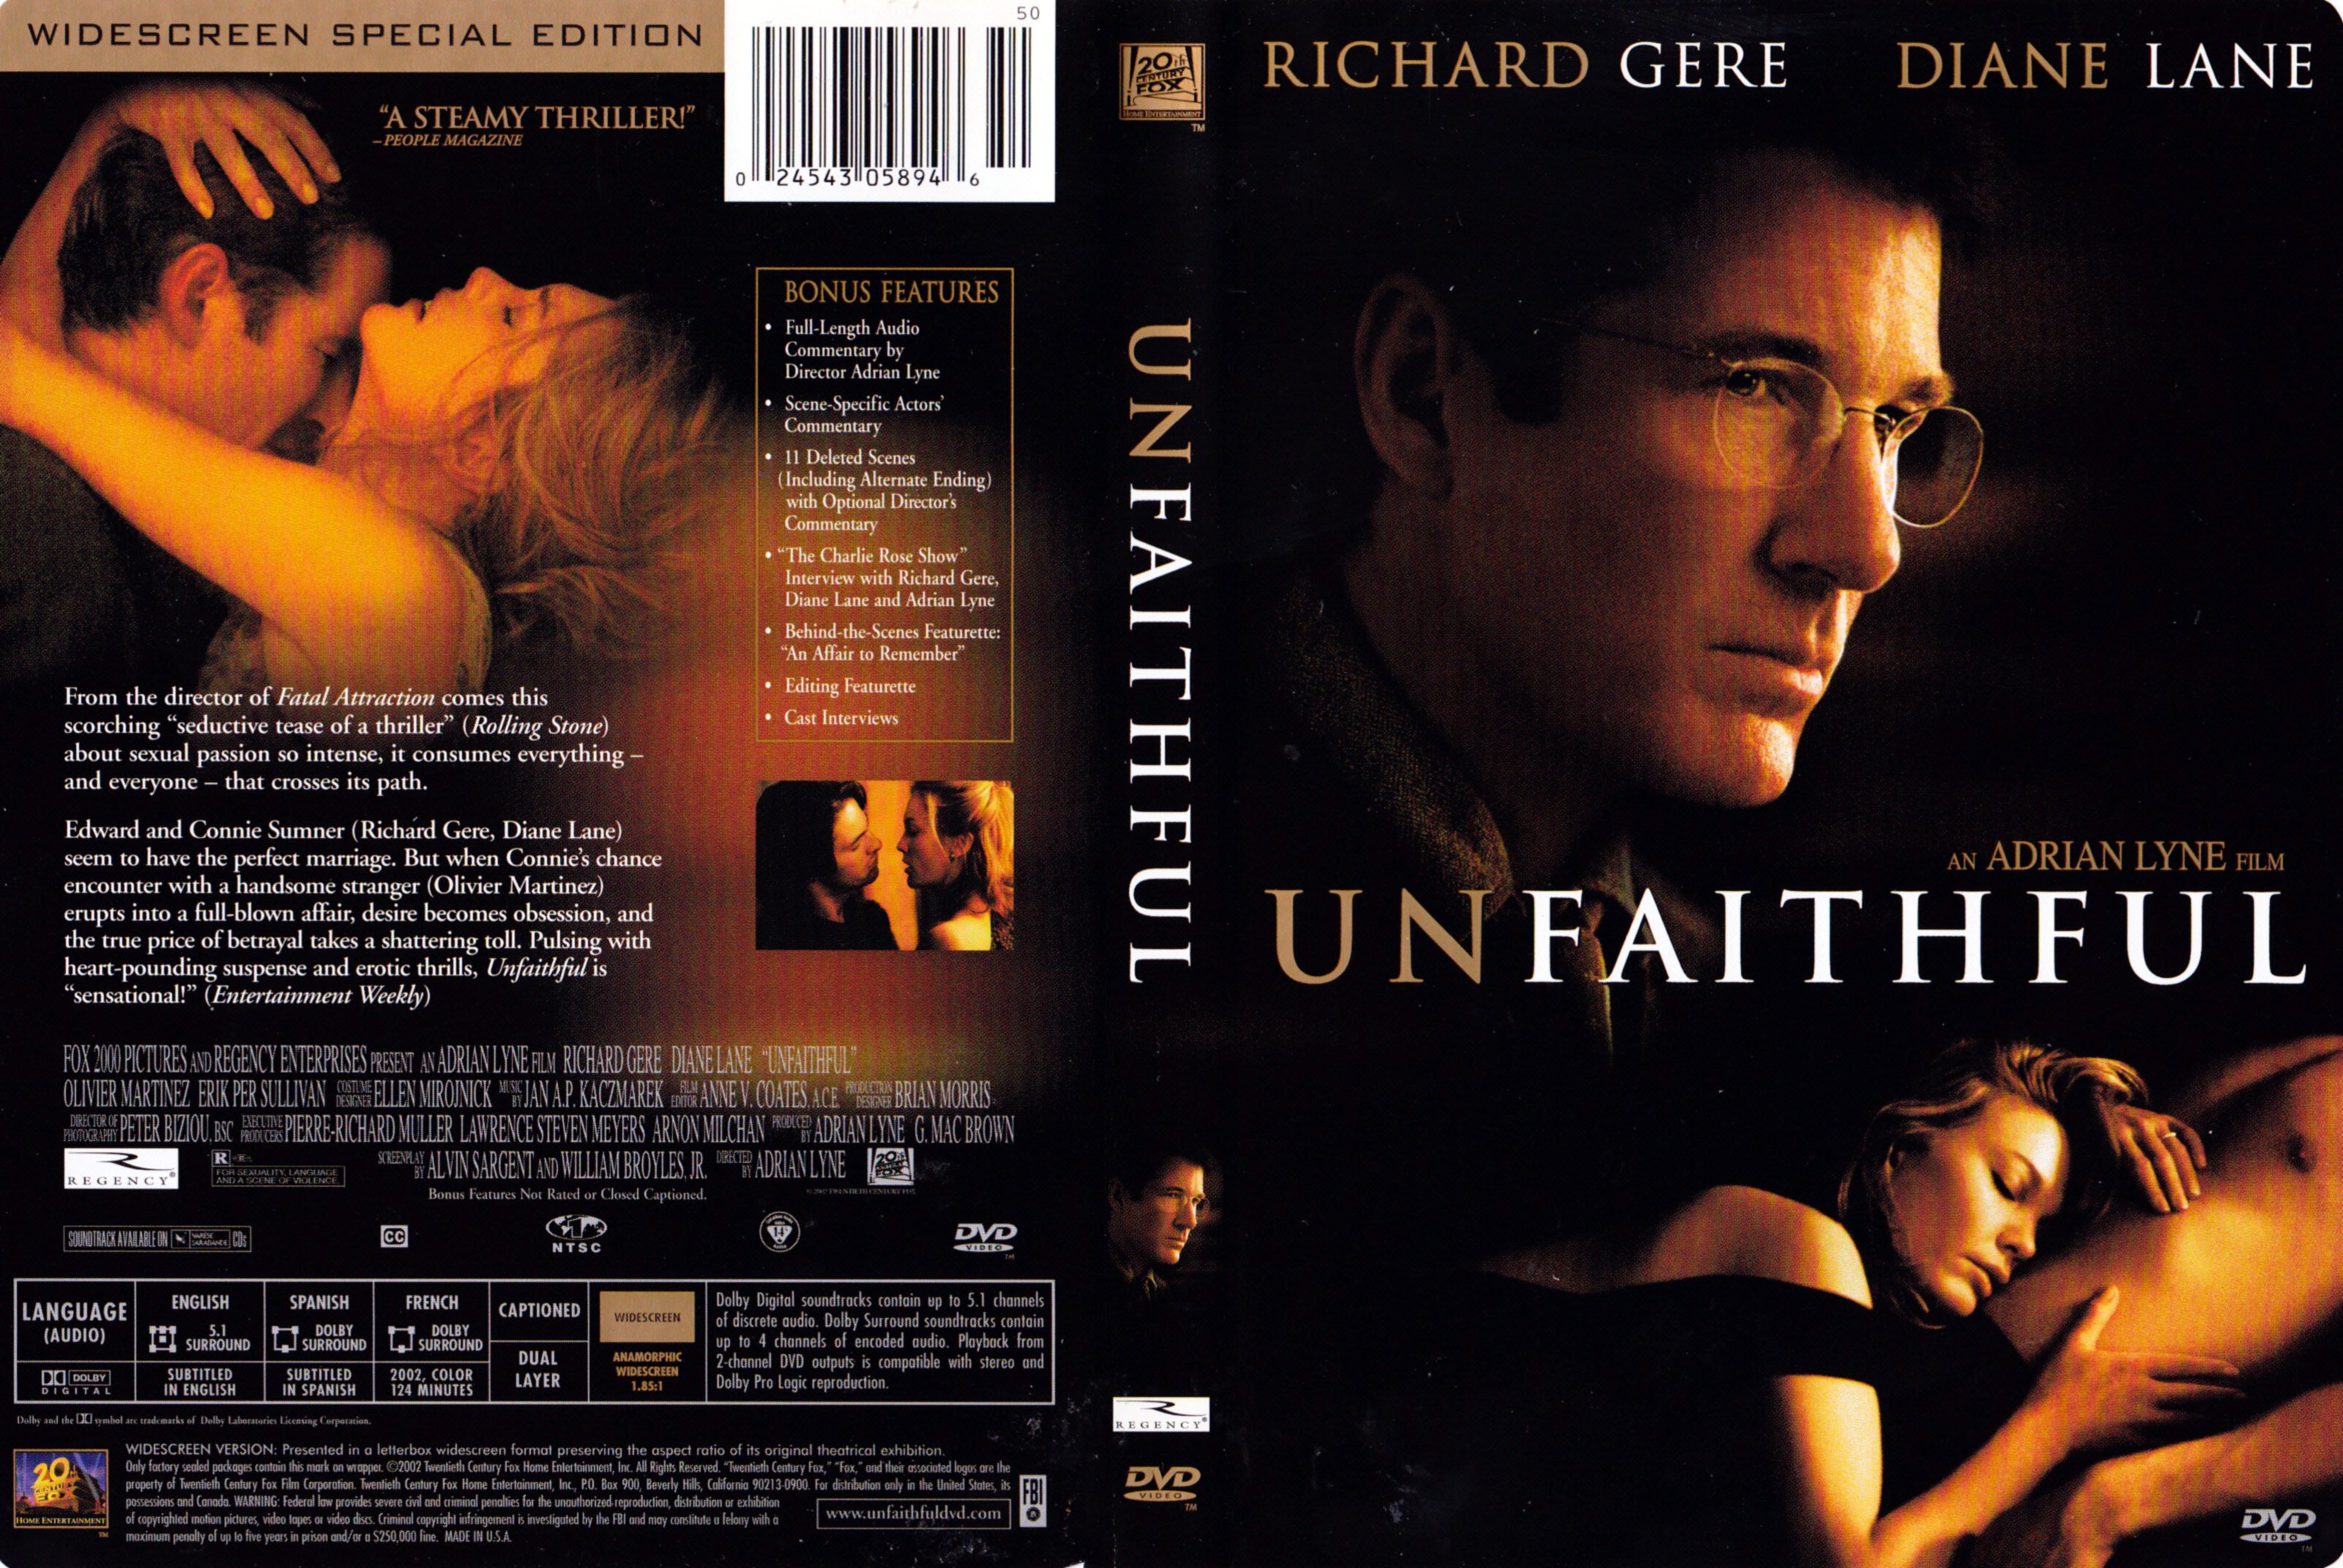 Jaquette DVD Unfaithful Zone 1